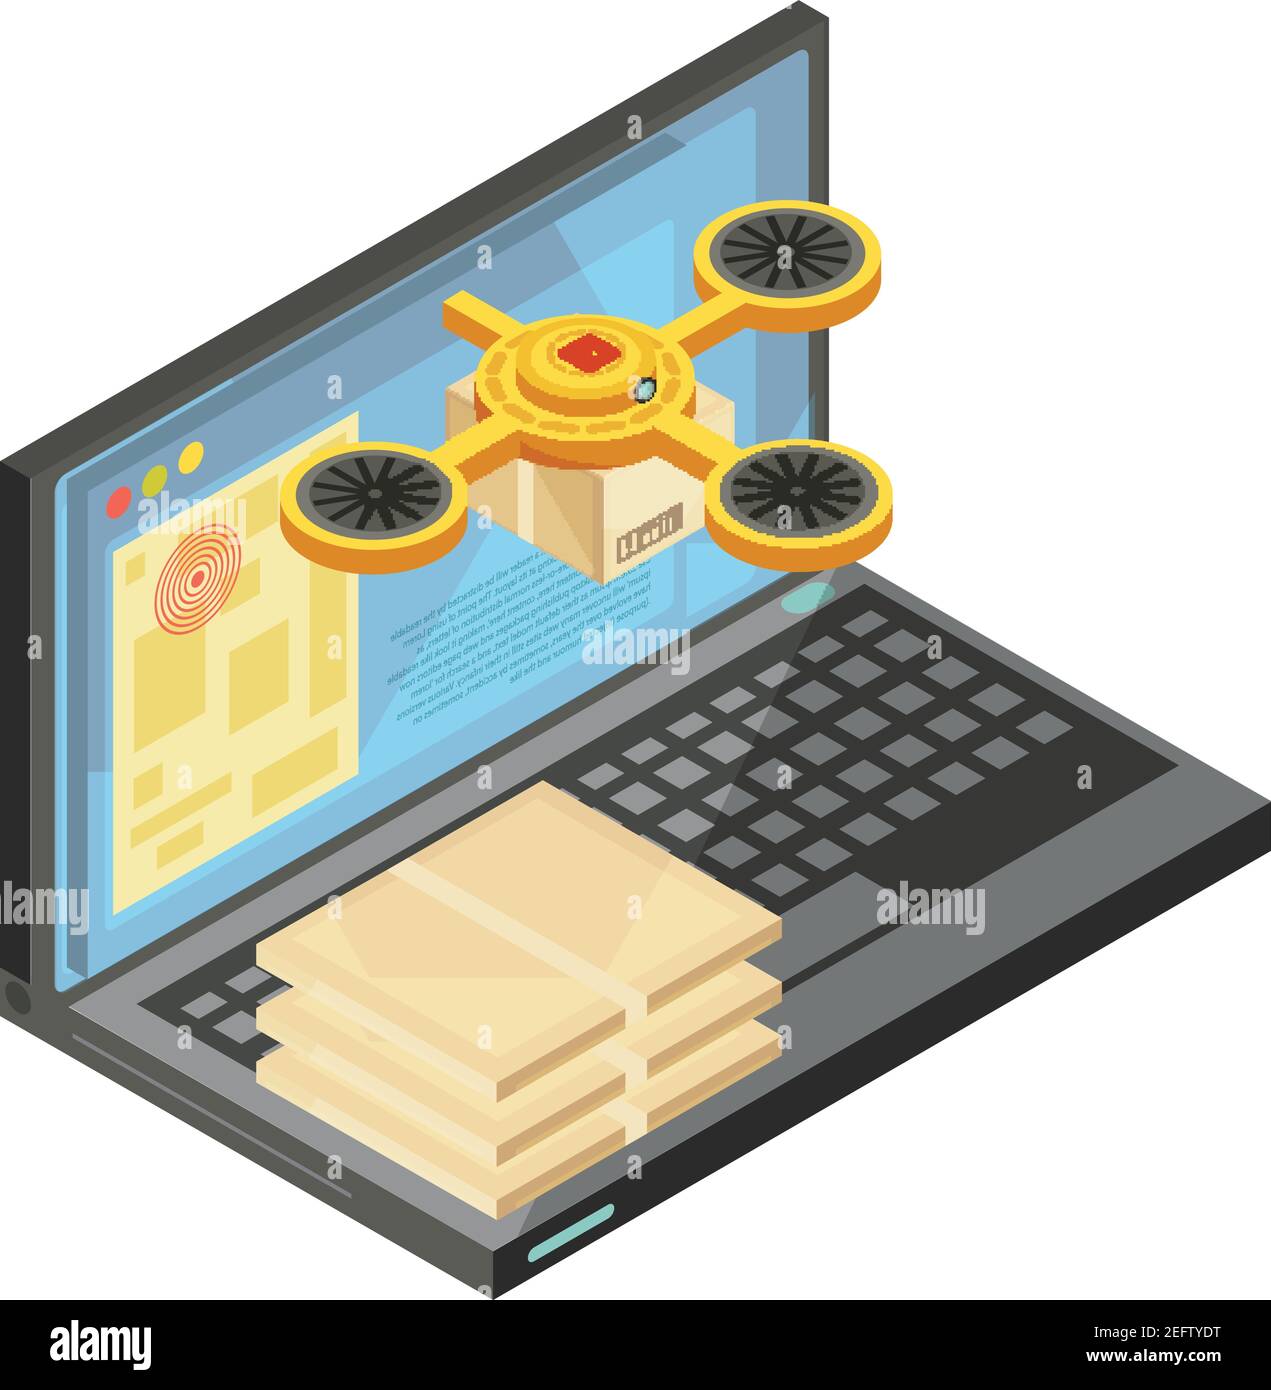 Lieferung Tracking durch Internet isometrische Zusammensetzung einschließlich Pakete auf Tastatur, Waren Ort auf Laptop-Bildschirm Vektor-Illustration Stock Vektor